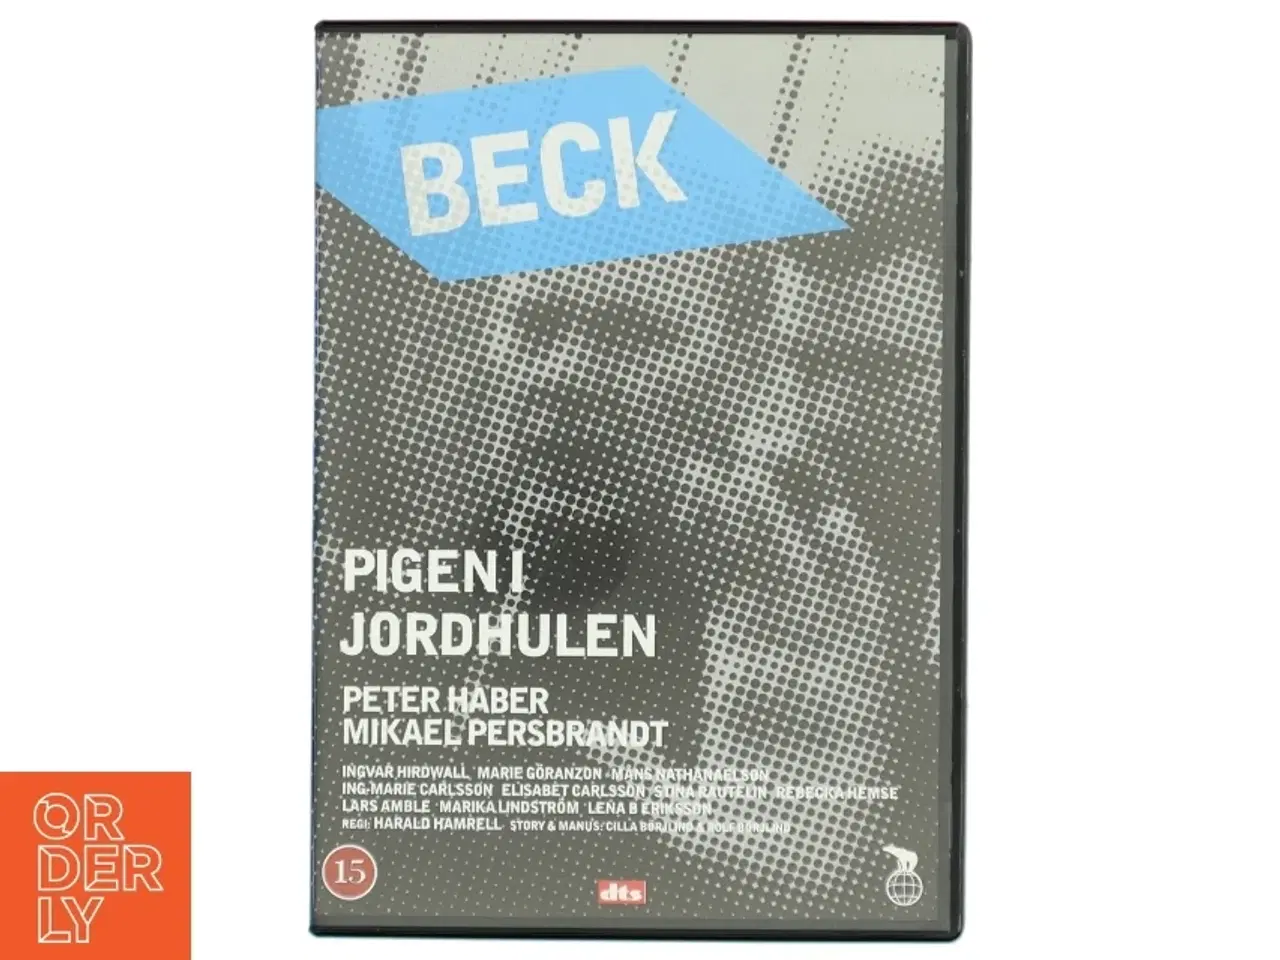 Billede 1 - Beck - Pigen i jordhulen DVD fra Nordisk Film